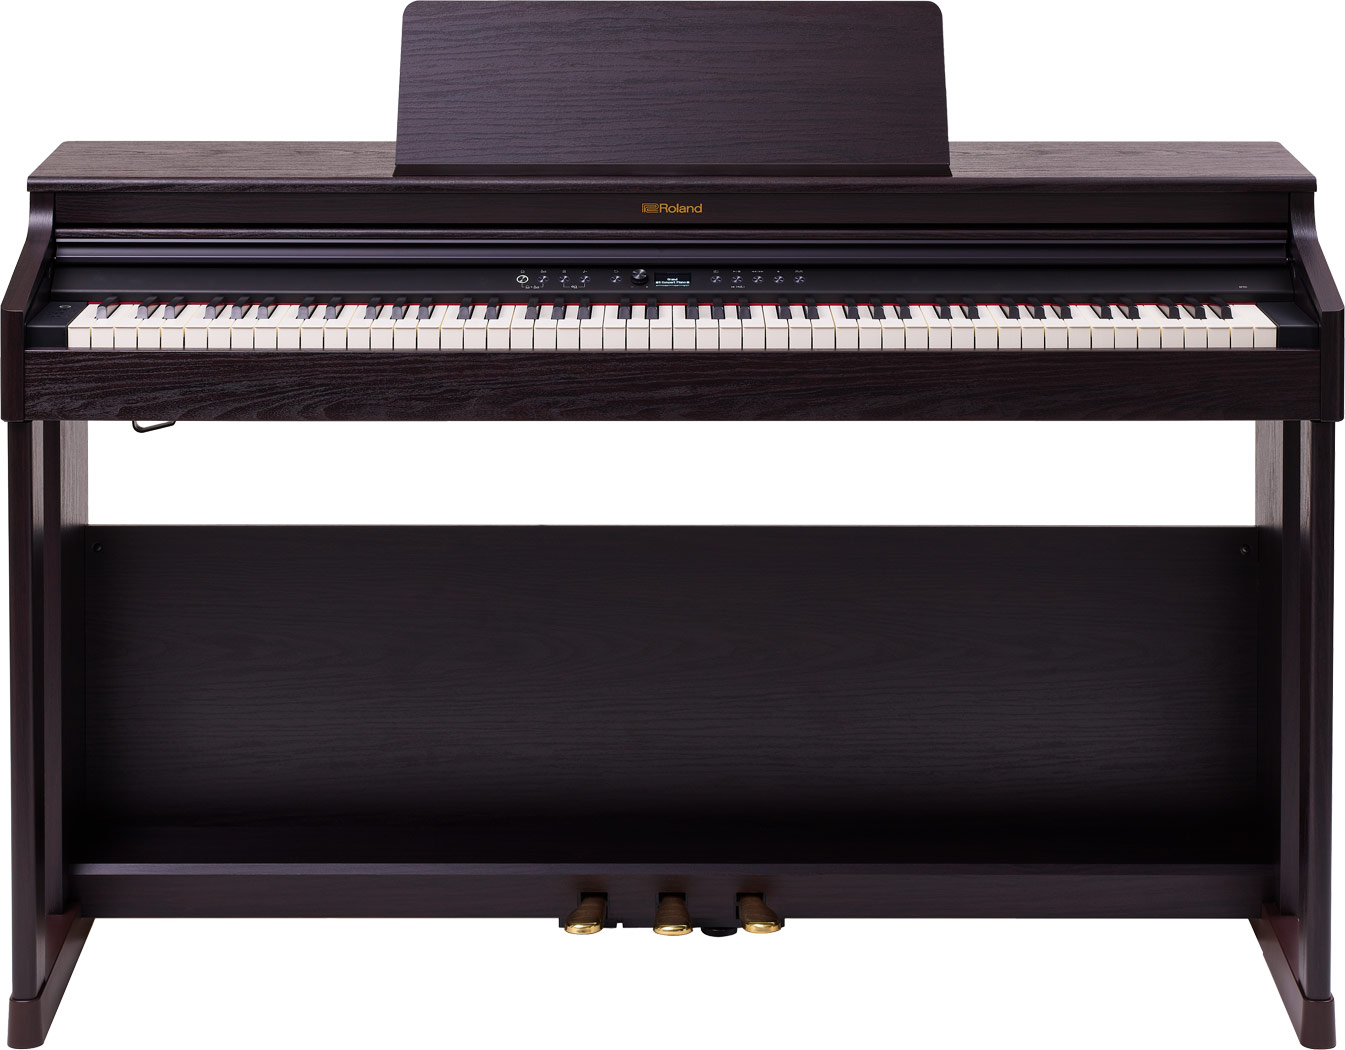 youpin vvave 8 key музыкальный инструмент фортепиано для большого пальца Цифровые пианино Roland RP701-DR